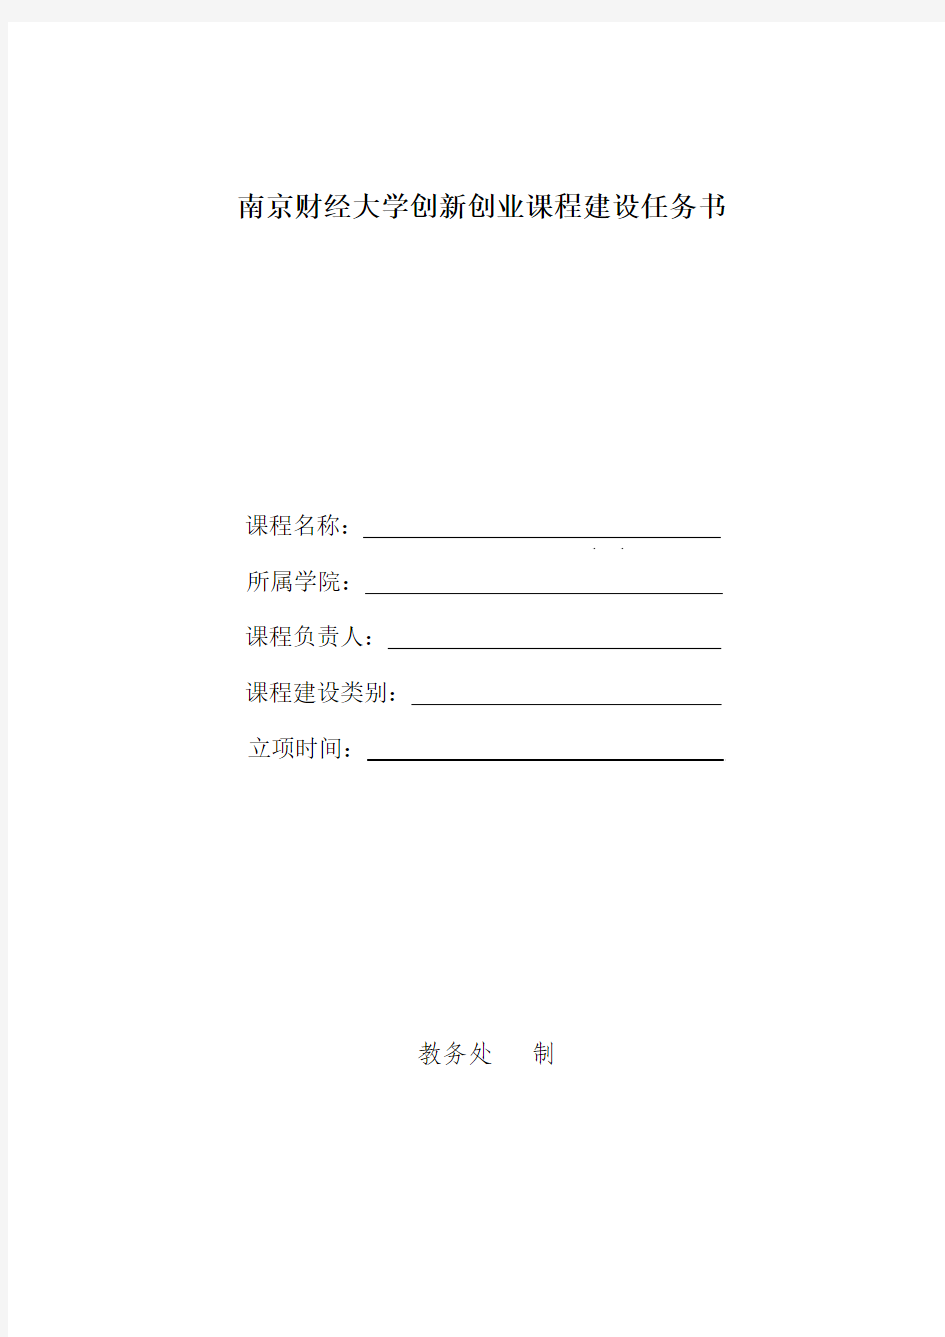 南京财经大学创新创业课程建设任务书